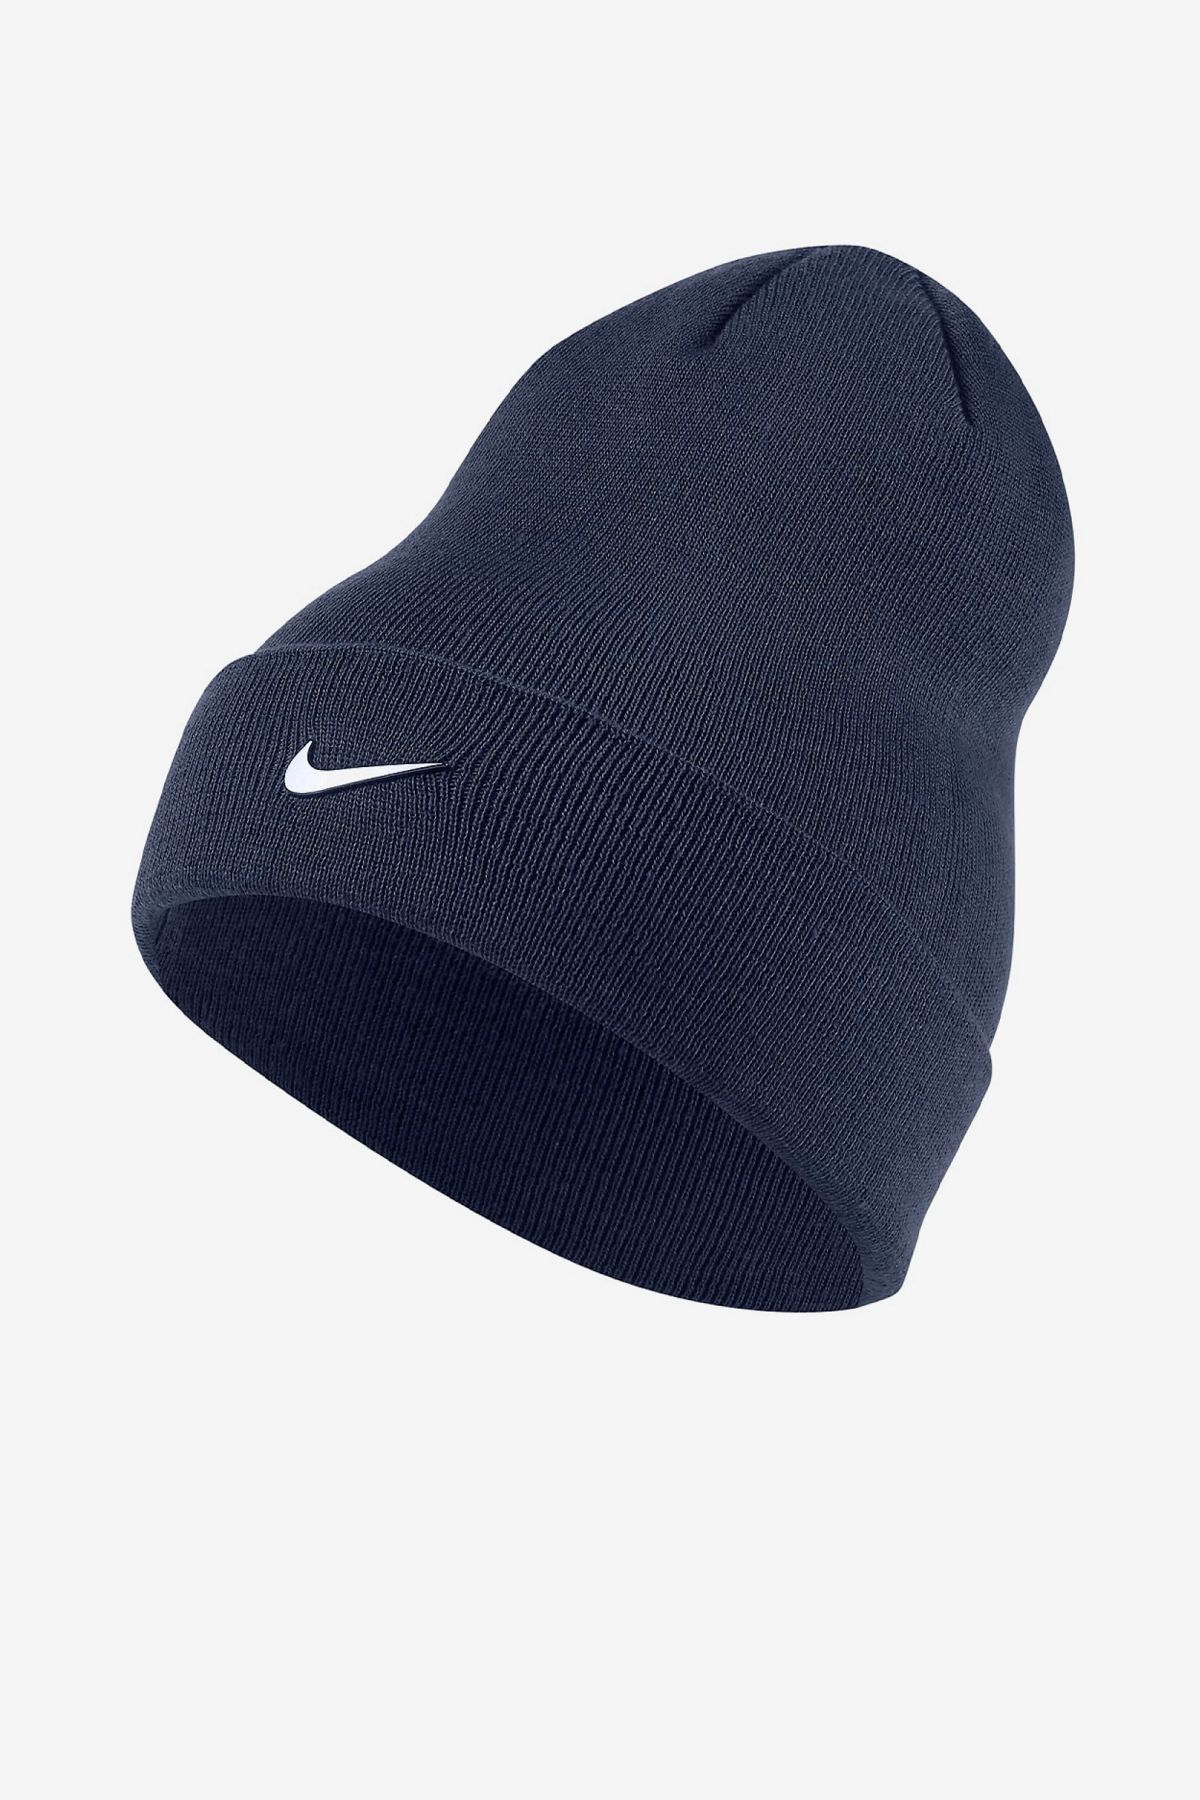 Nike Şapka Erkek Navy